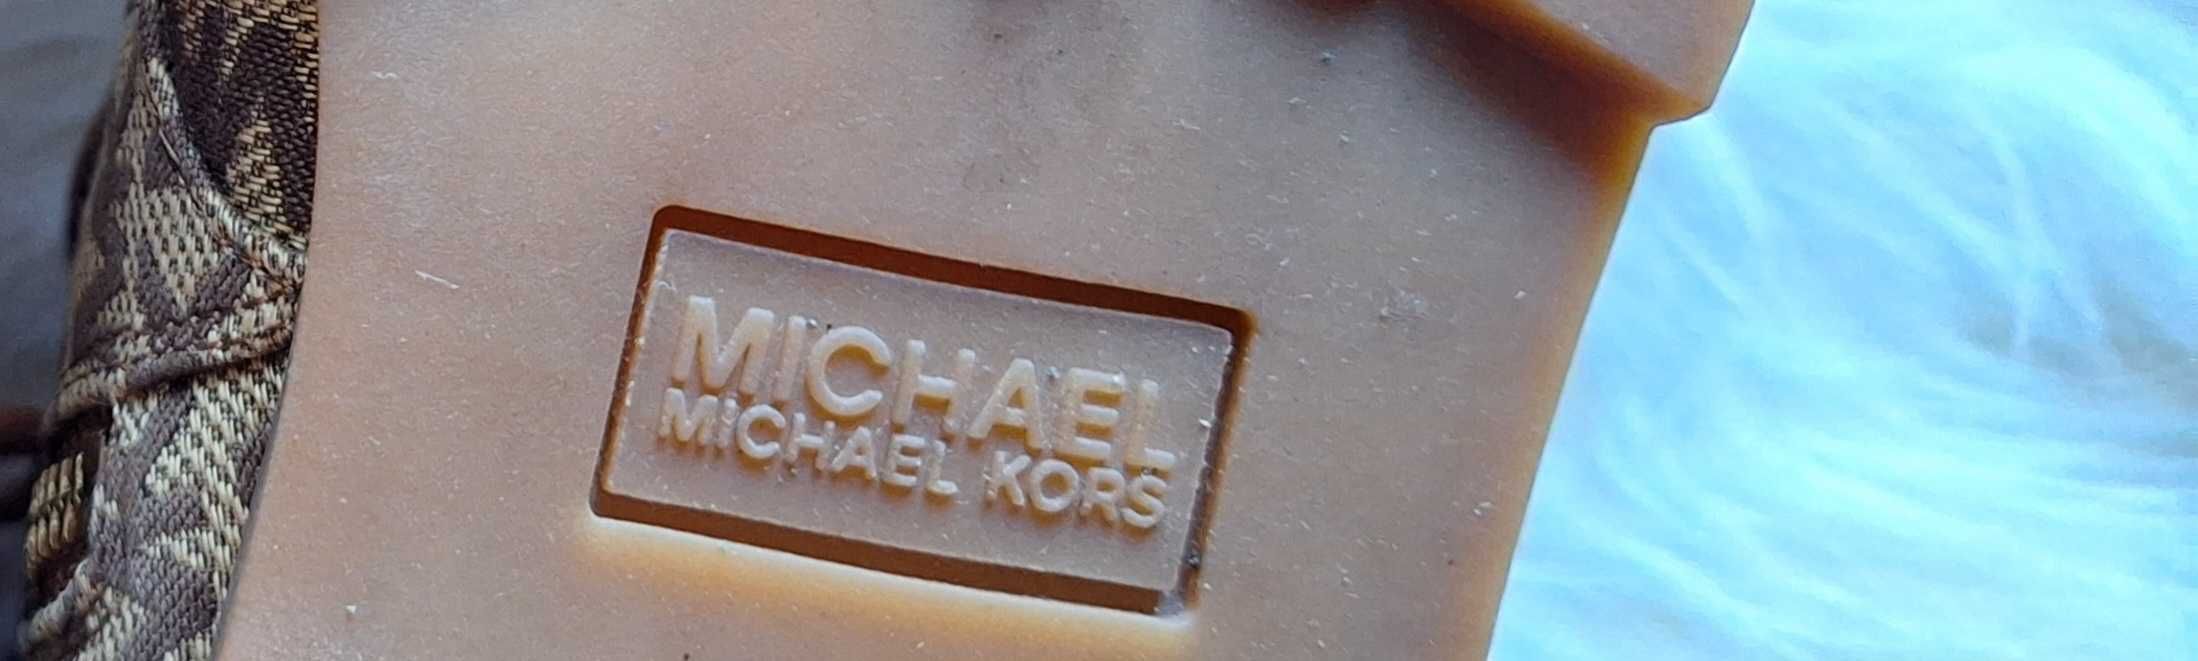 Botas Michael Kors originais